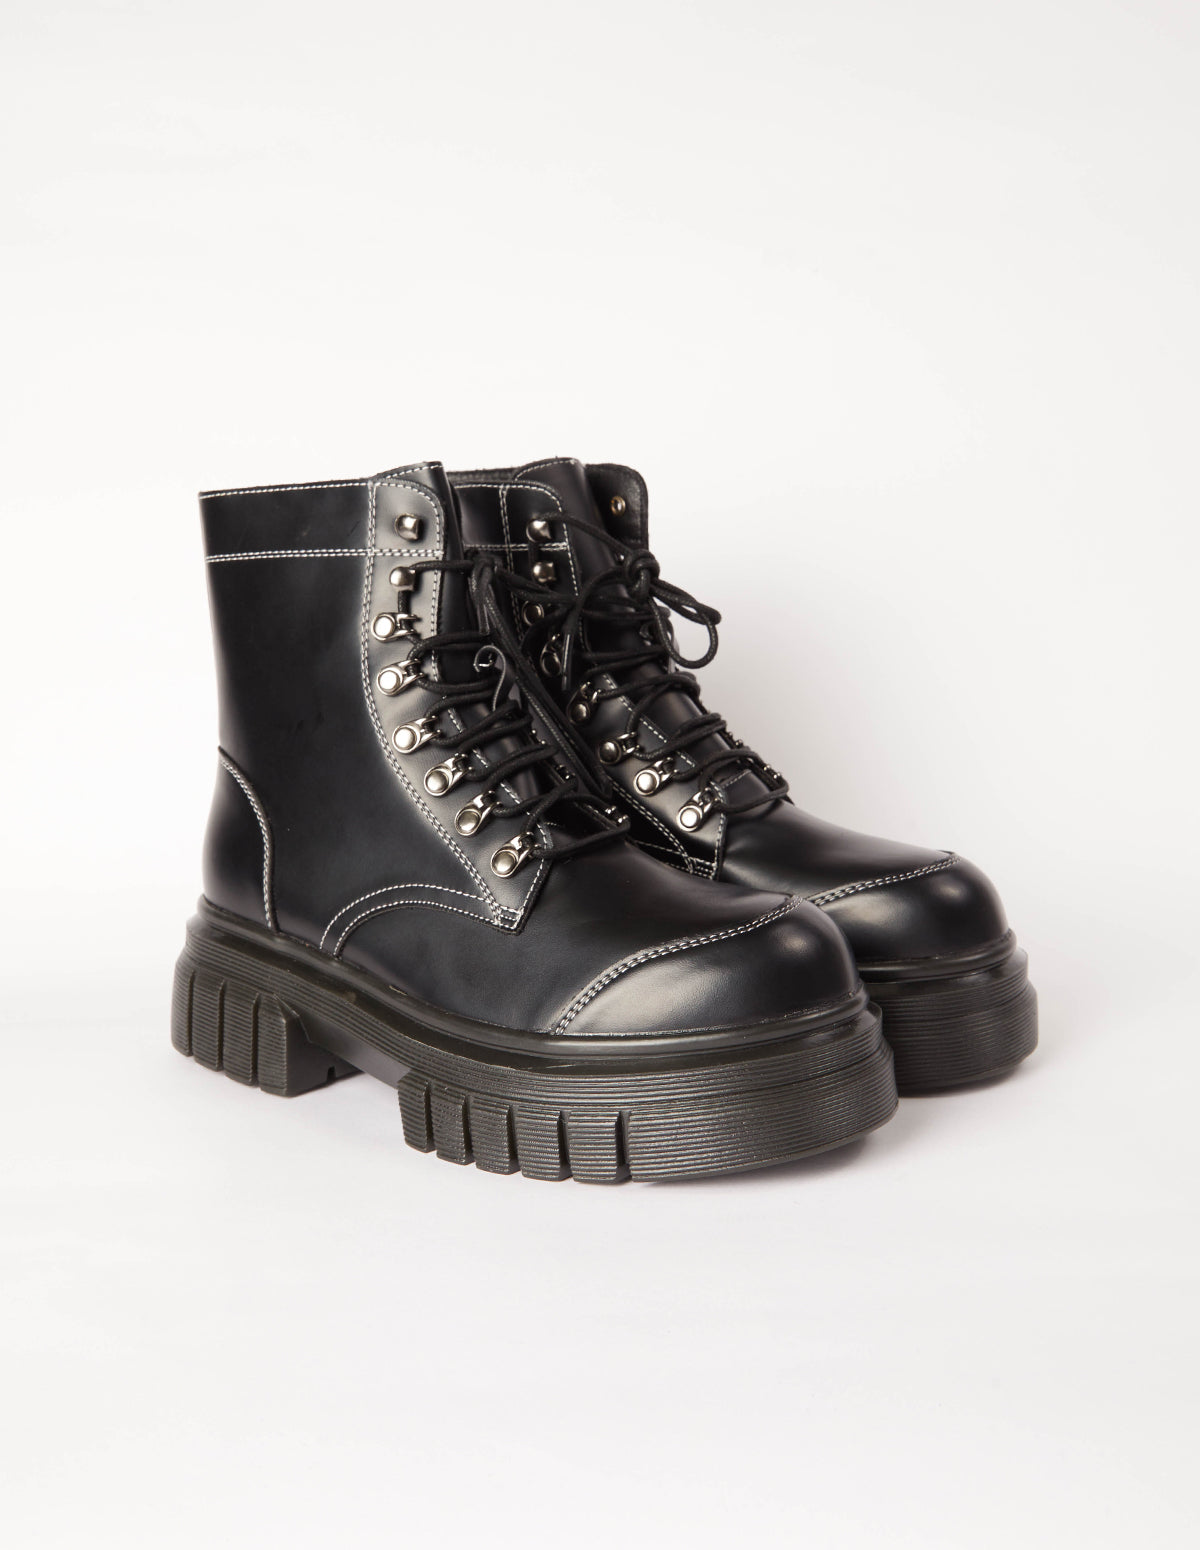 PU Lace Up Combat Style Boots - UK 6 (EU 39) / BLACK